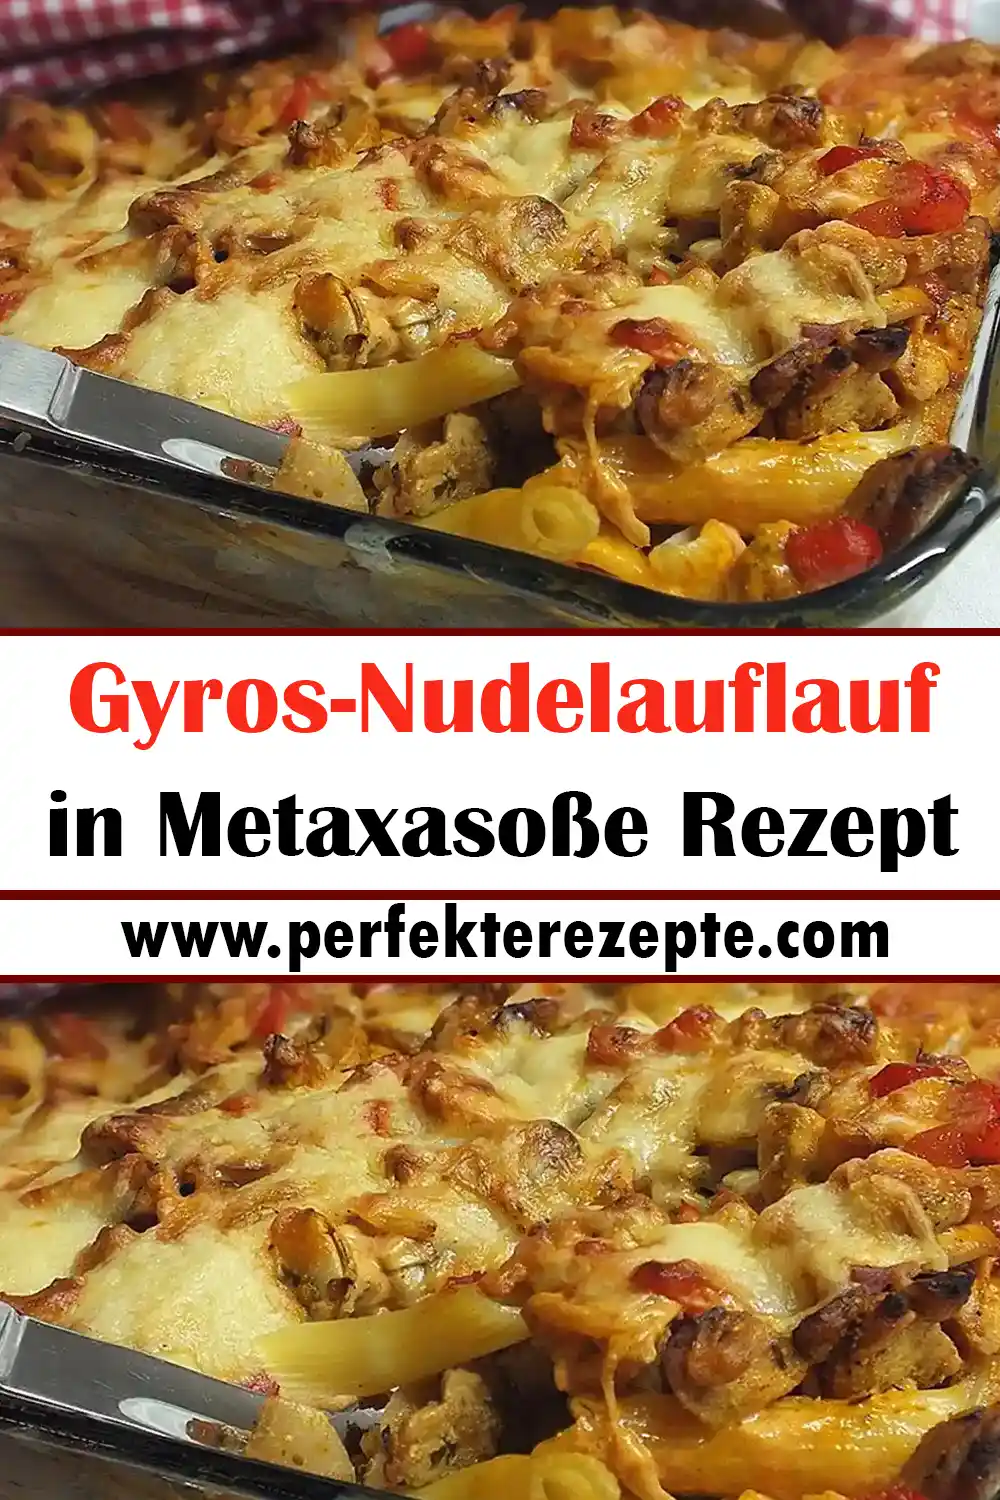 Gyros-Nudelauflauf in Metaxasoße Rezept